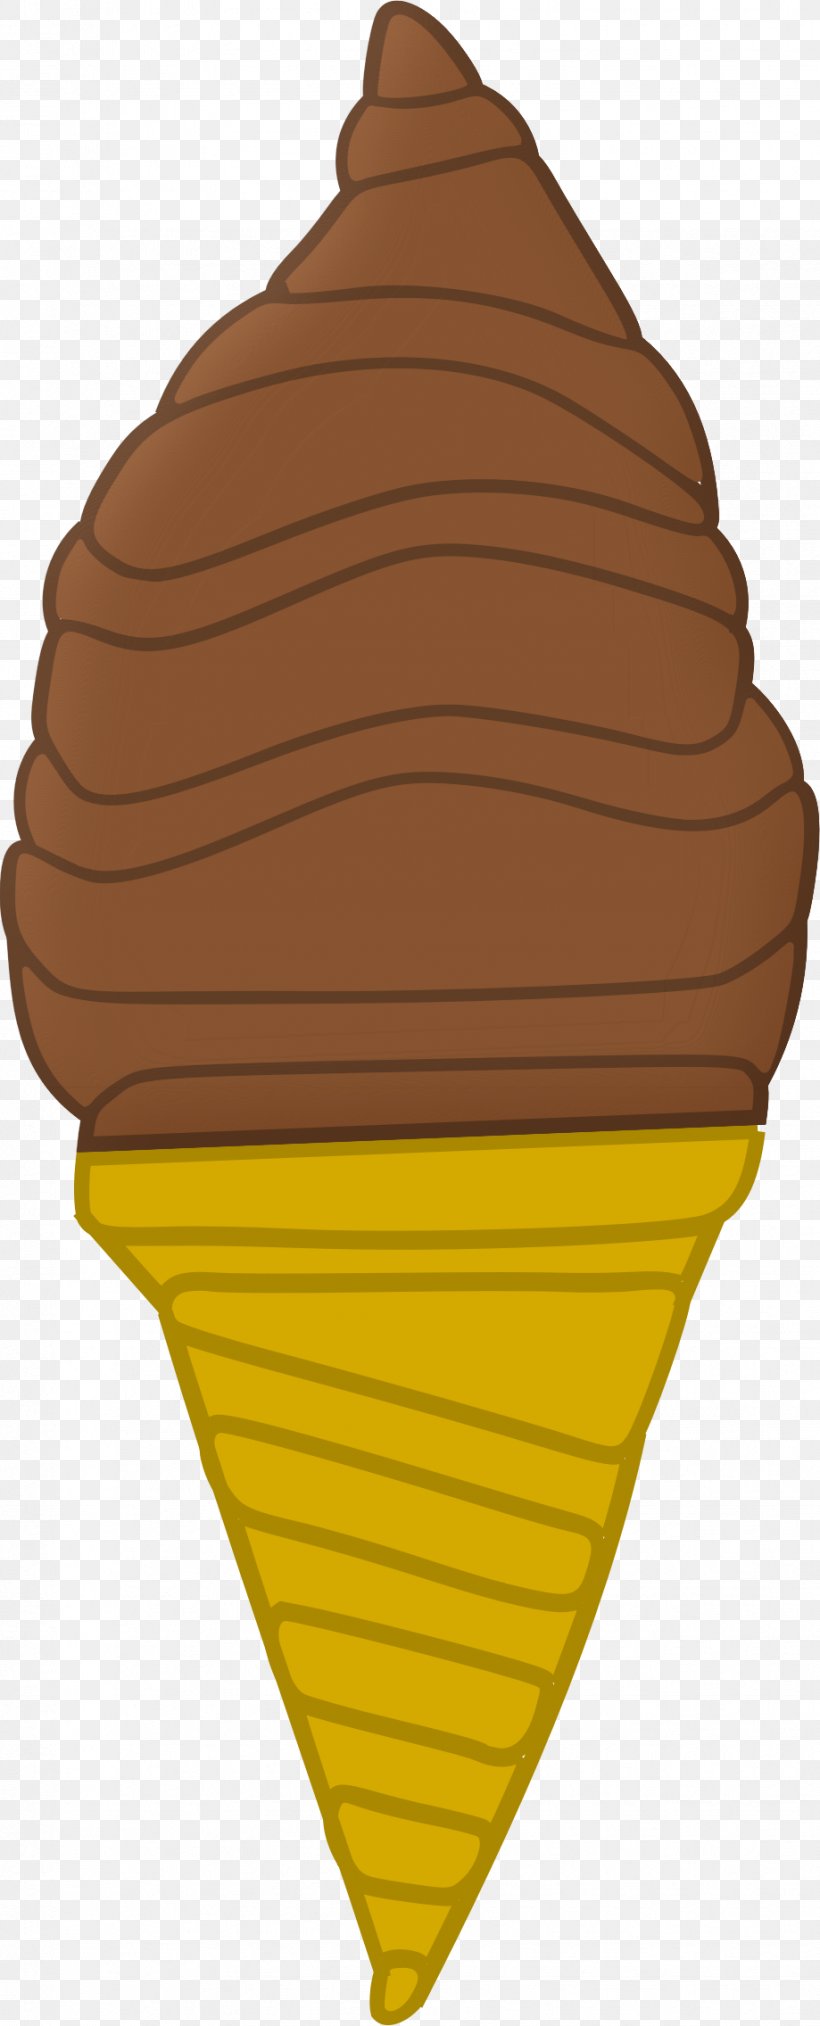 Ice Cream Cones Sundae Chocolate Ice Cream, PNG, 919x2271px, Ice Cream, Chocolate, Chocolate Ice Cream, Cream, Dessert Download Free